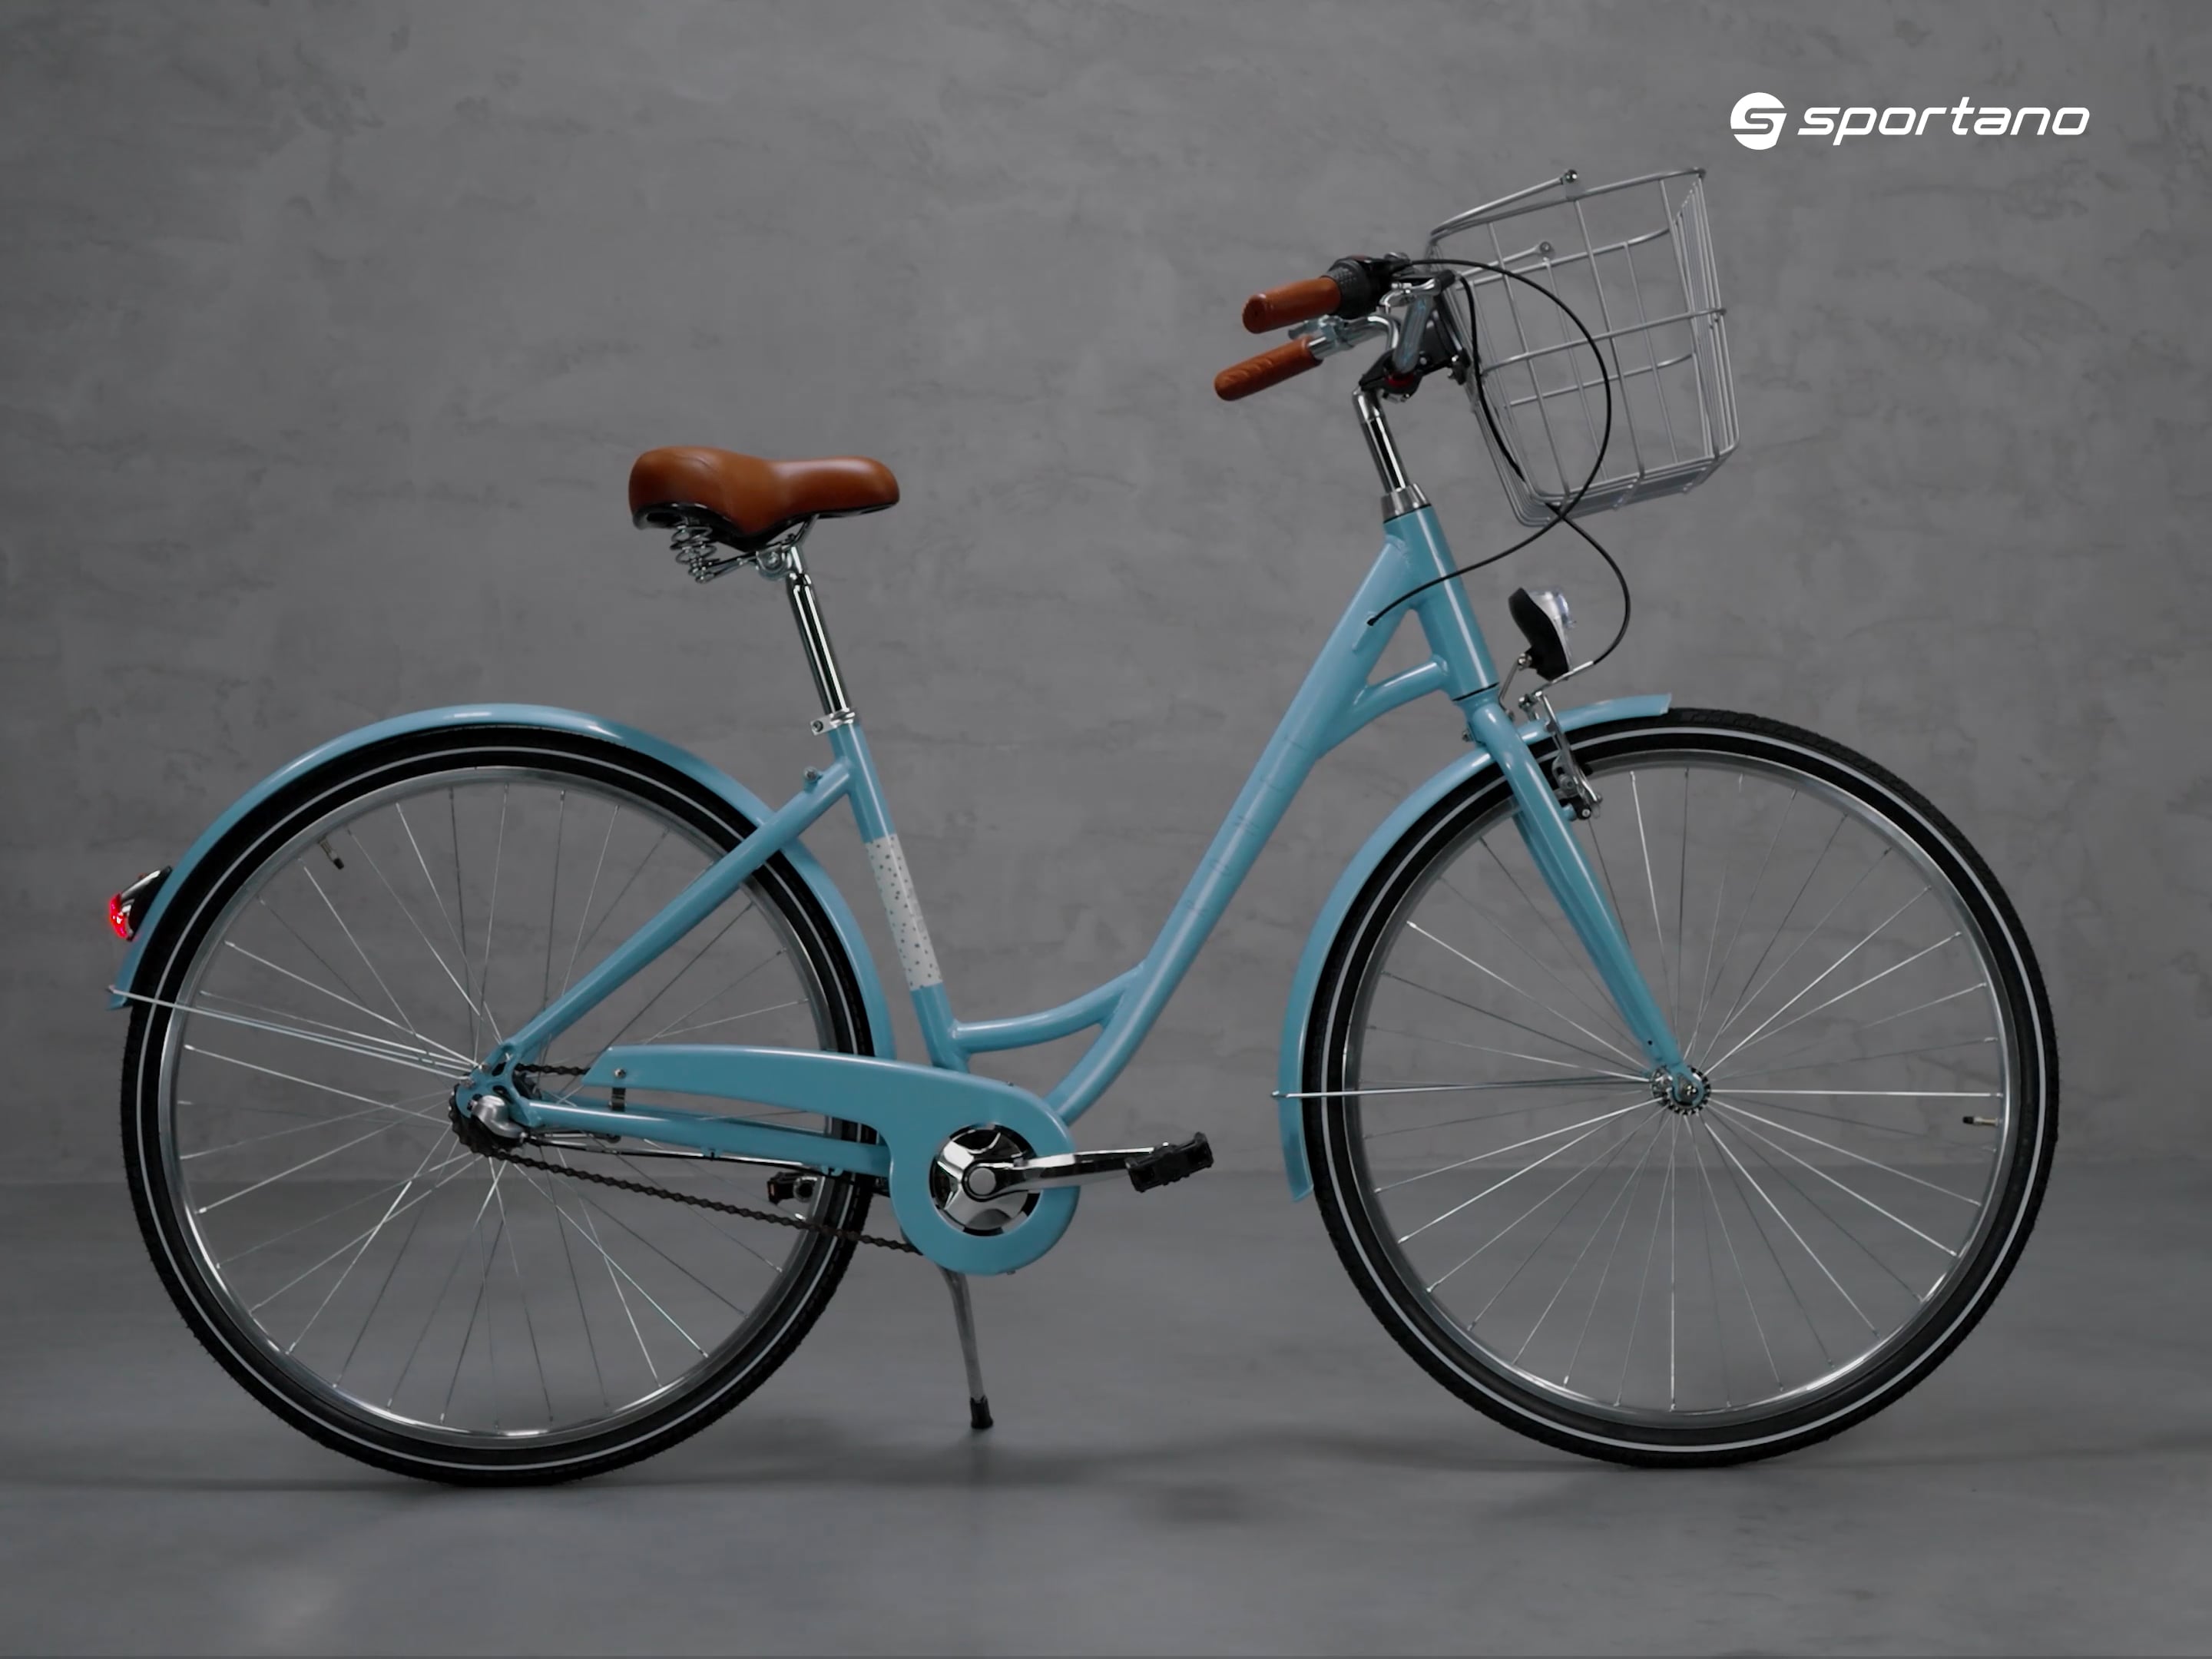 Dámsky mestský bicykel Romet Pop Art 28 Eco blue 2228553